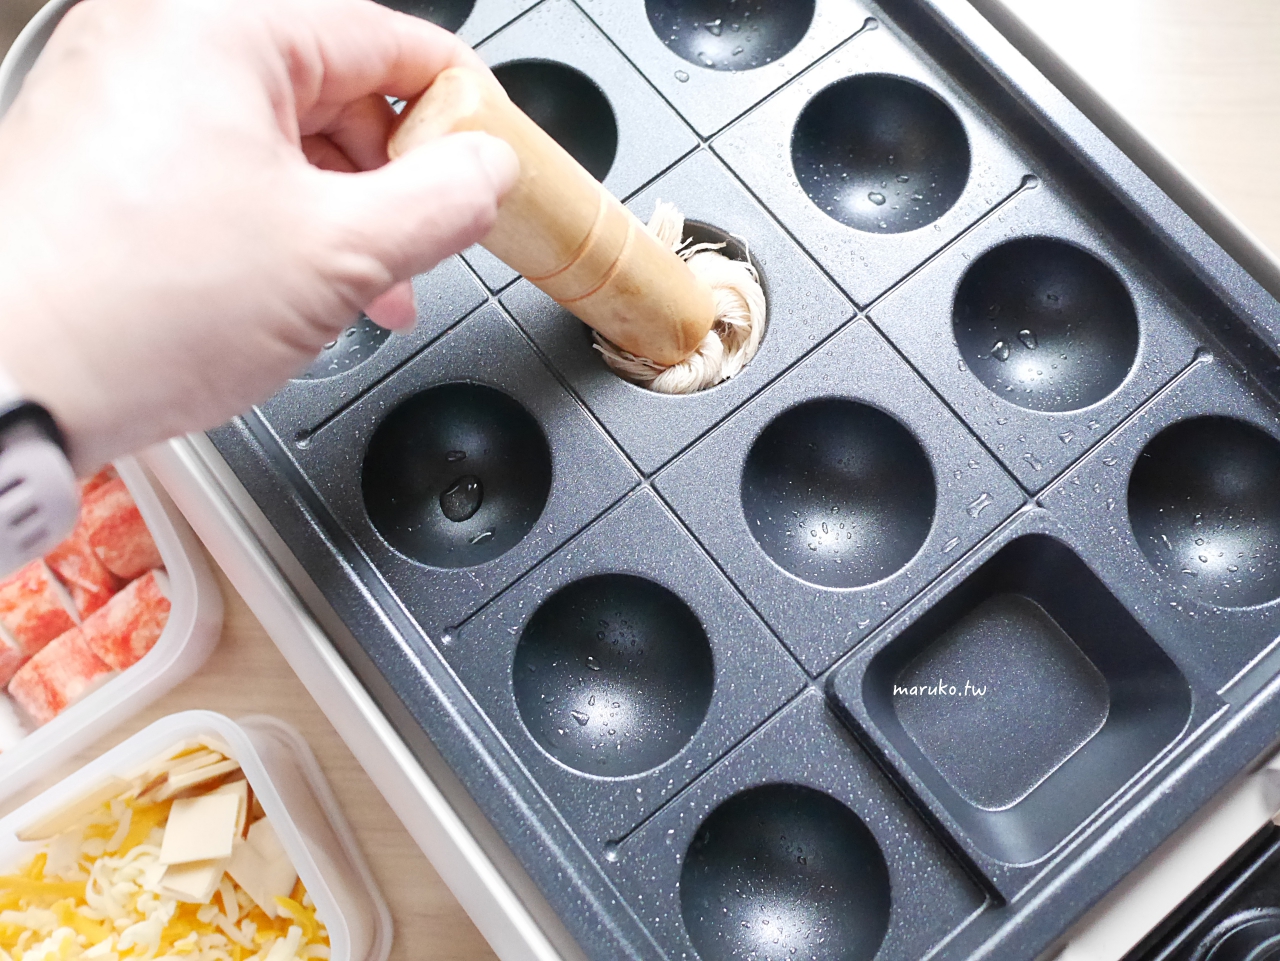 【食譜】蟹肉麻糬起司燒 章魚燒食材變化做法 日本麗克特電烤盤分享 @Maruko與美食有個約會